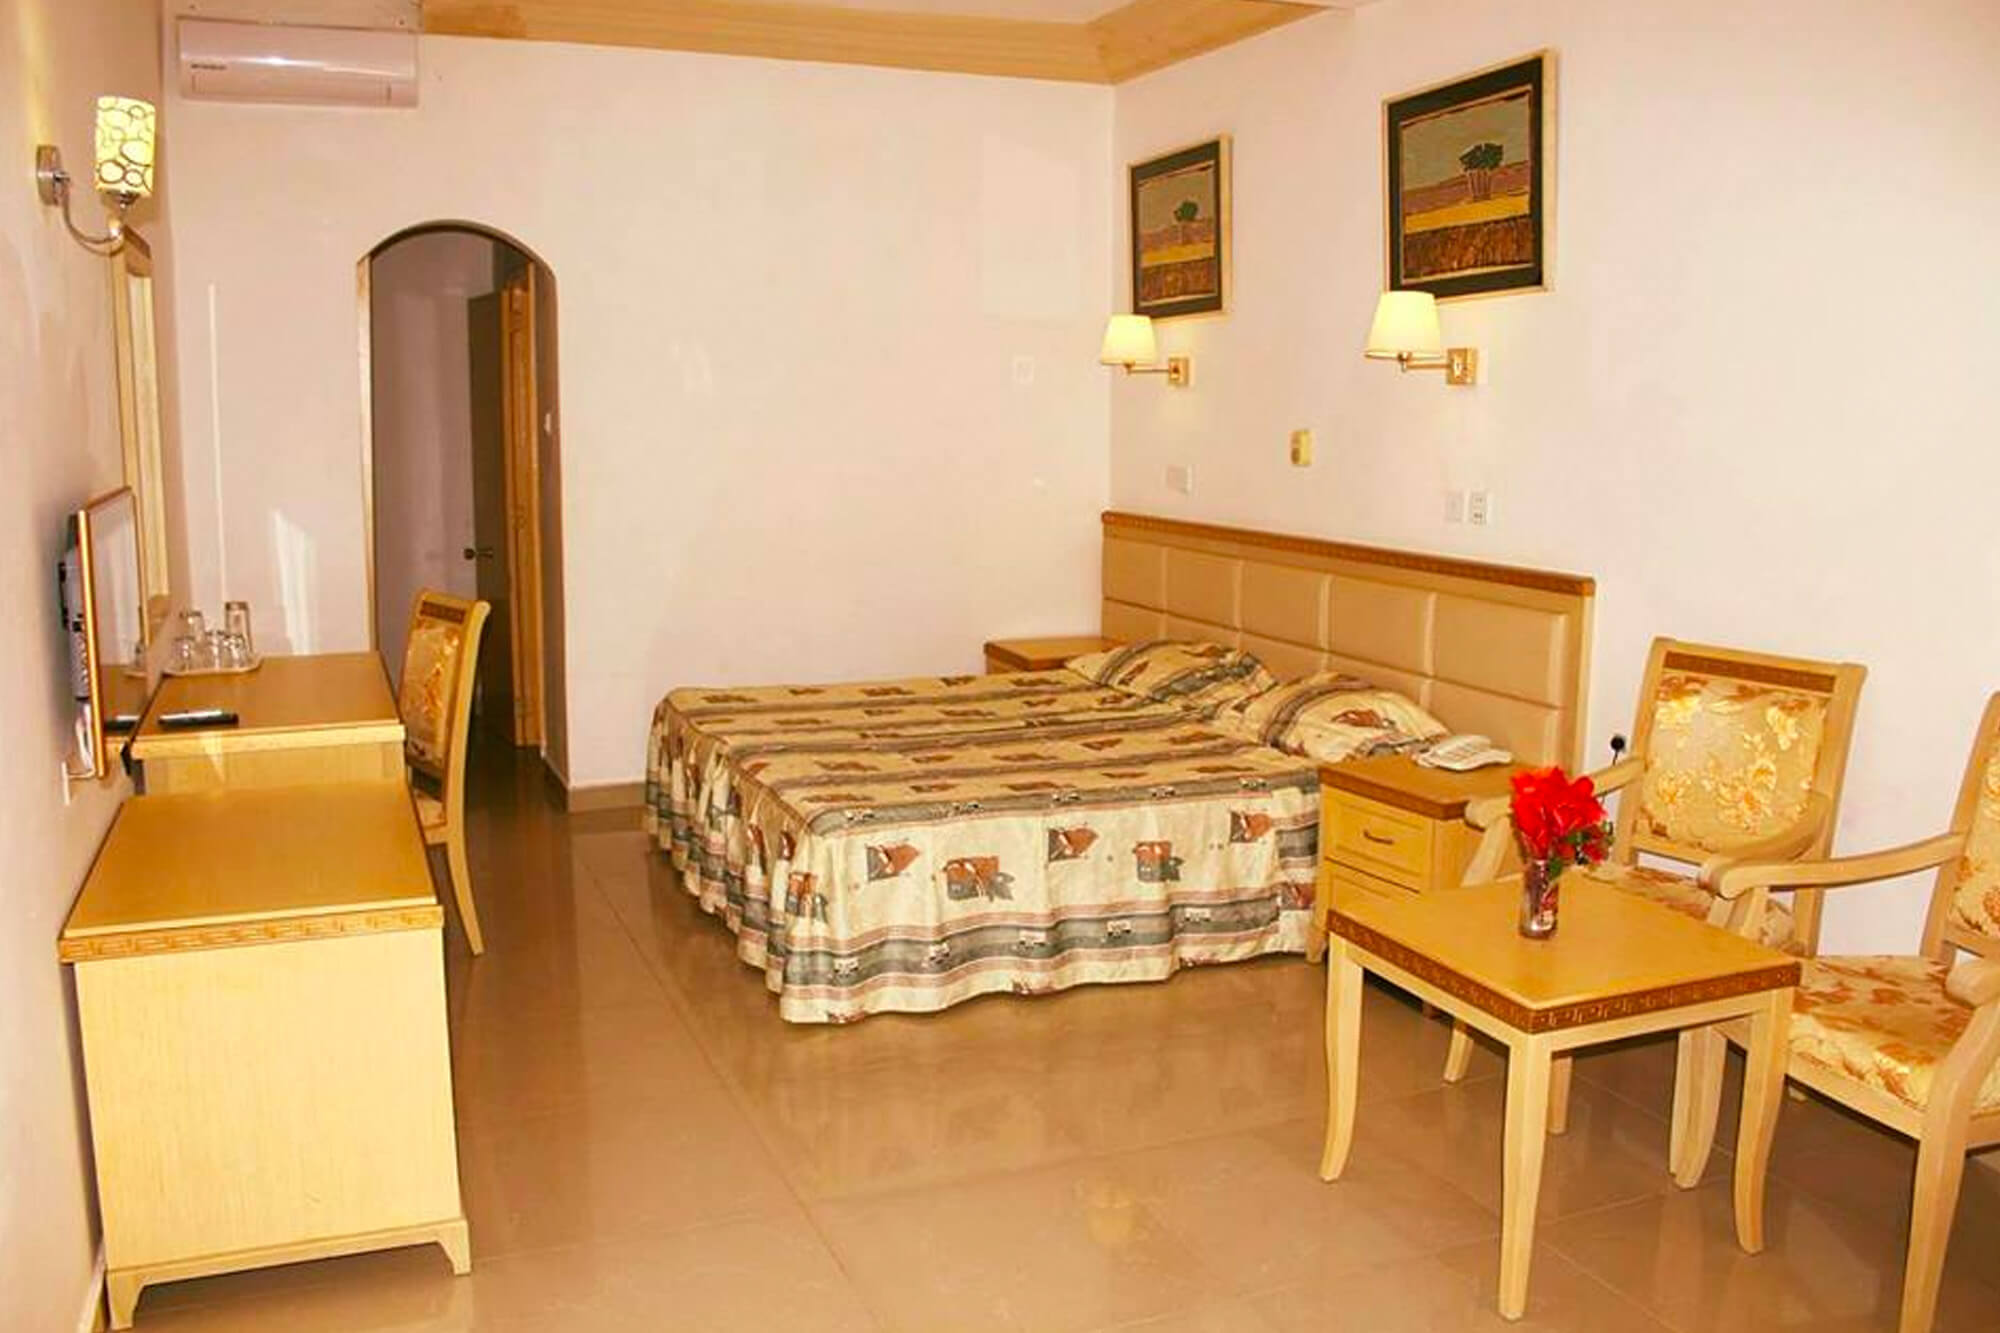 Hotelkamer van het Cape Point hotel in Gambia